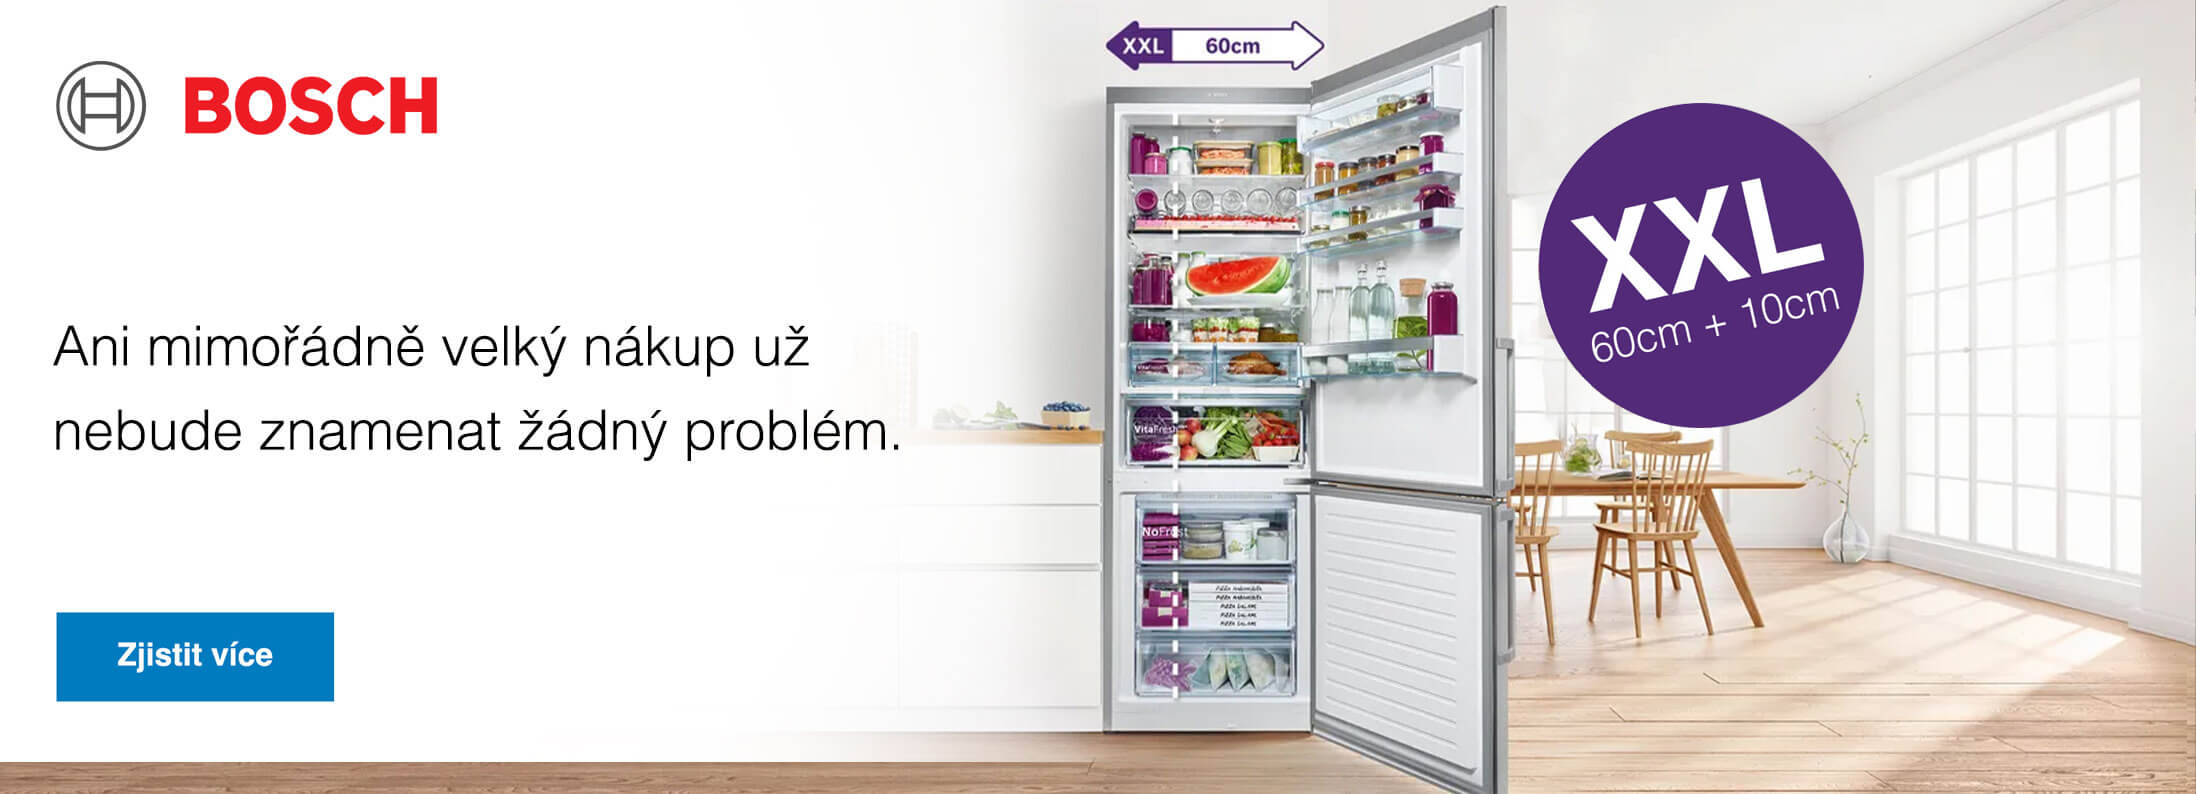 Bosch - Extra prostorné kombinované chladničky